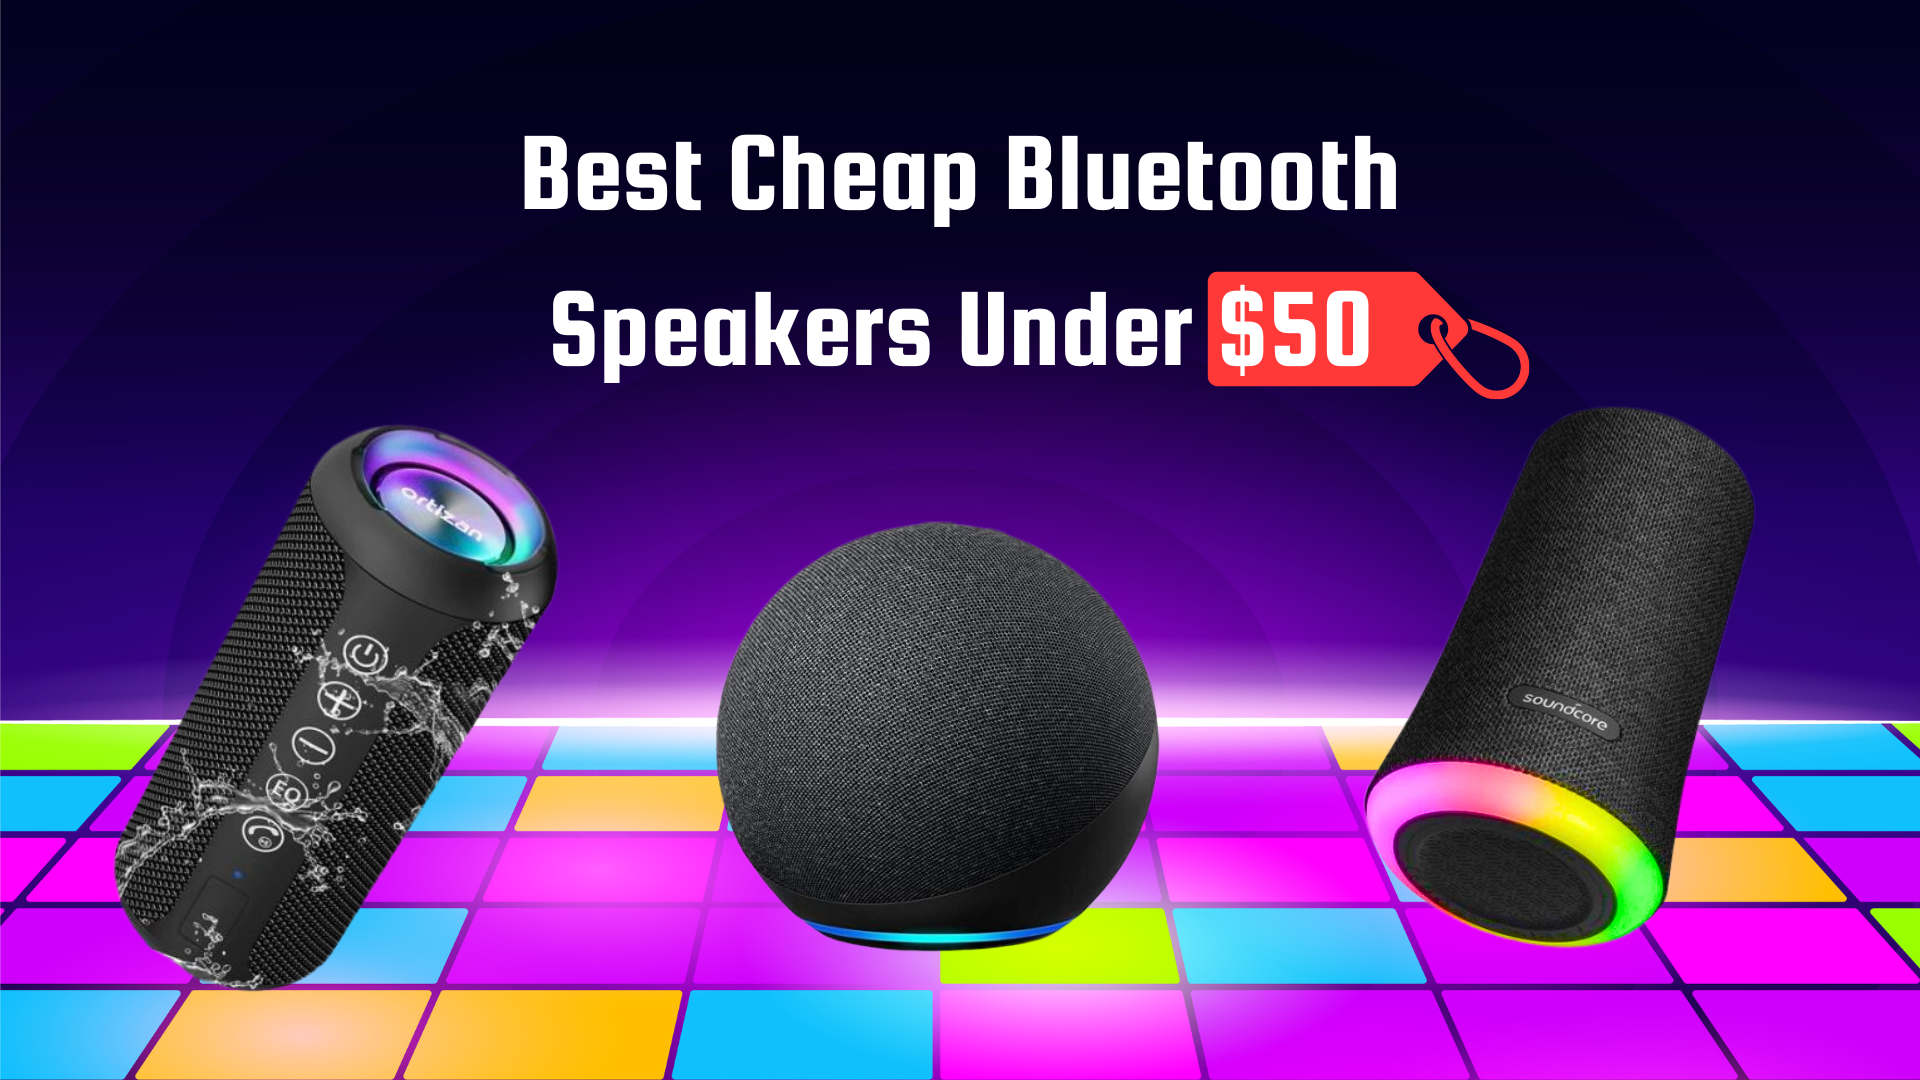 Best Cheap Bluetooth Speakers Under $50